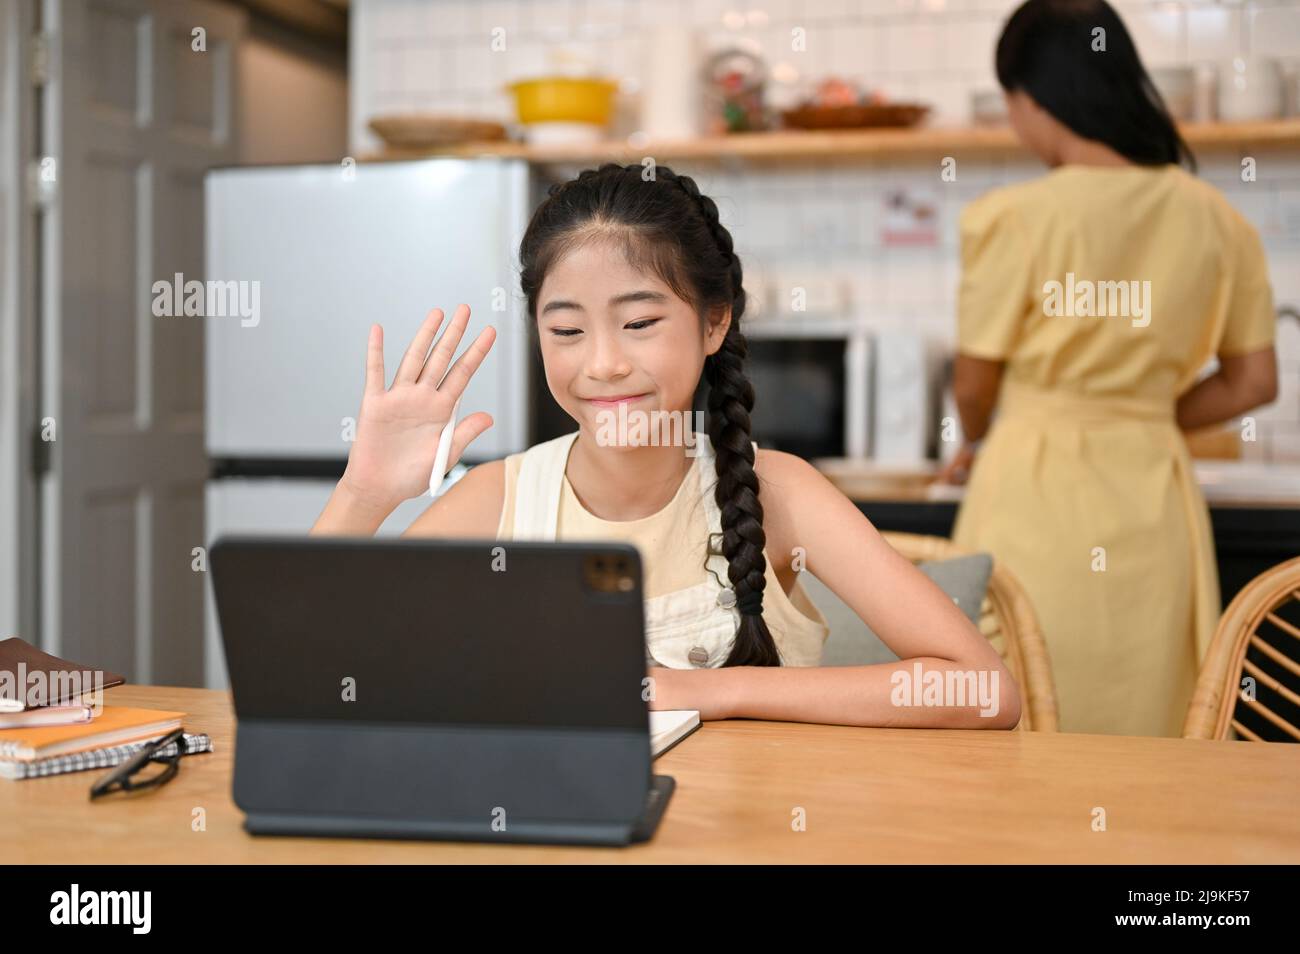 Jolie jeune fille asiatique étudiant sur le cours en ligne via un ordinateur tablette, s'assoit dans la salle à manger tandis que sa mère cuisine dans la cuisine derrière. Banque D'Images